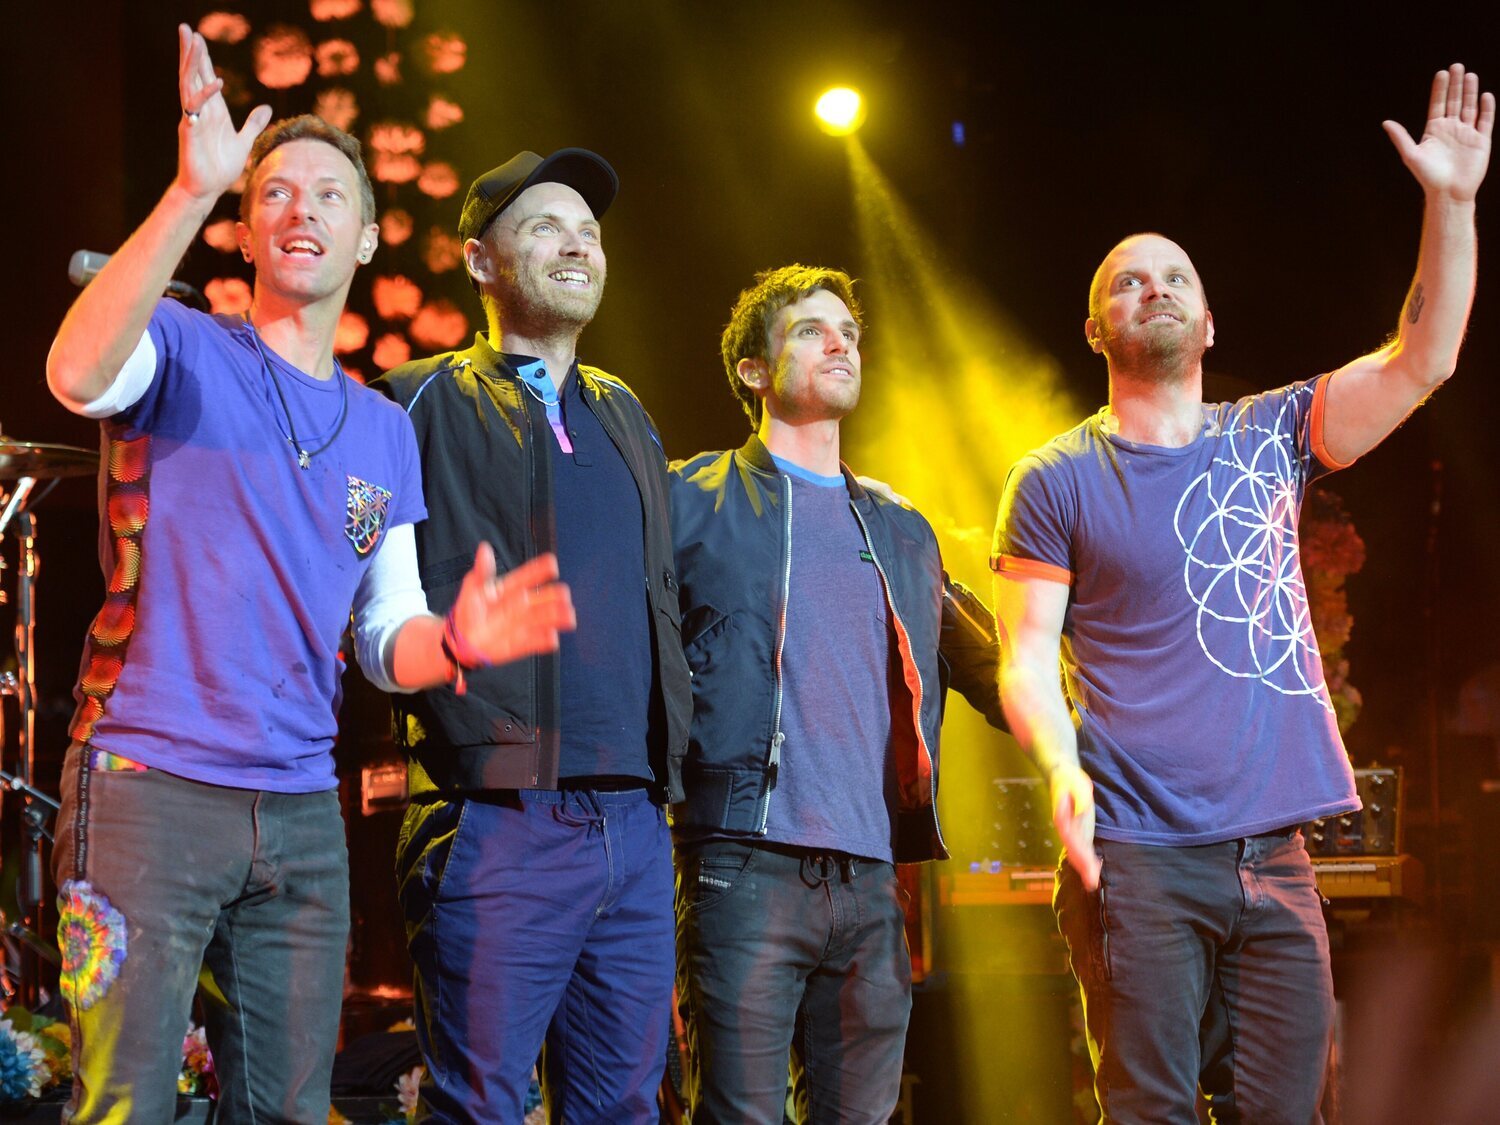 Se gasta 900 euros en entradas para ver a Coldplay en Barcelona y le toca estar en mesa electoral